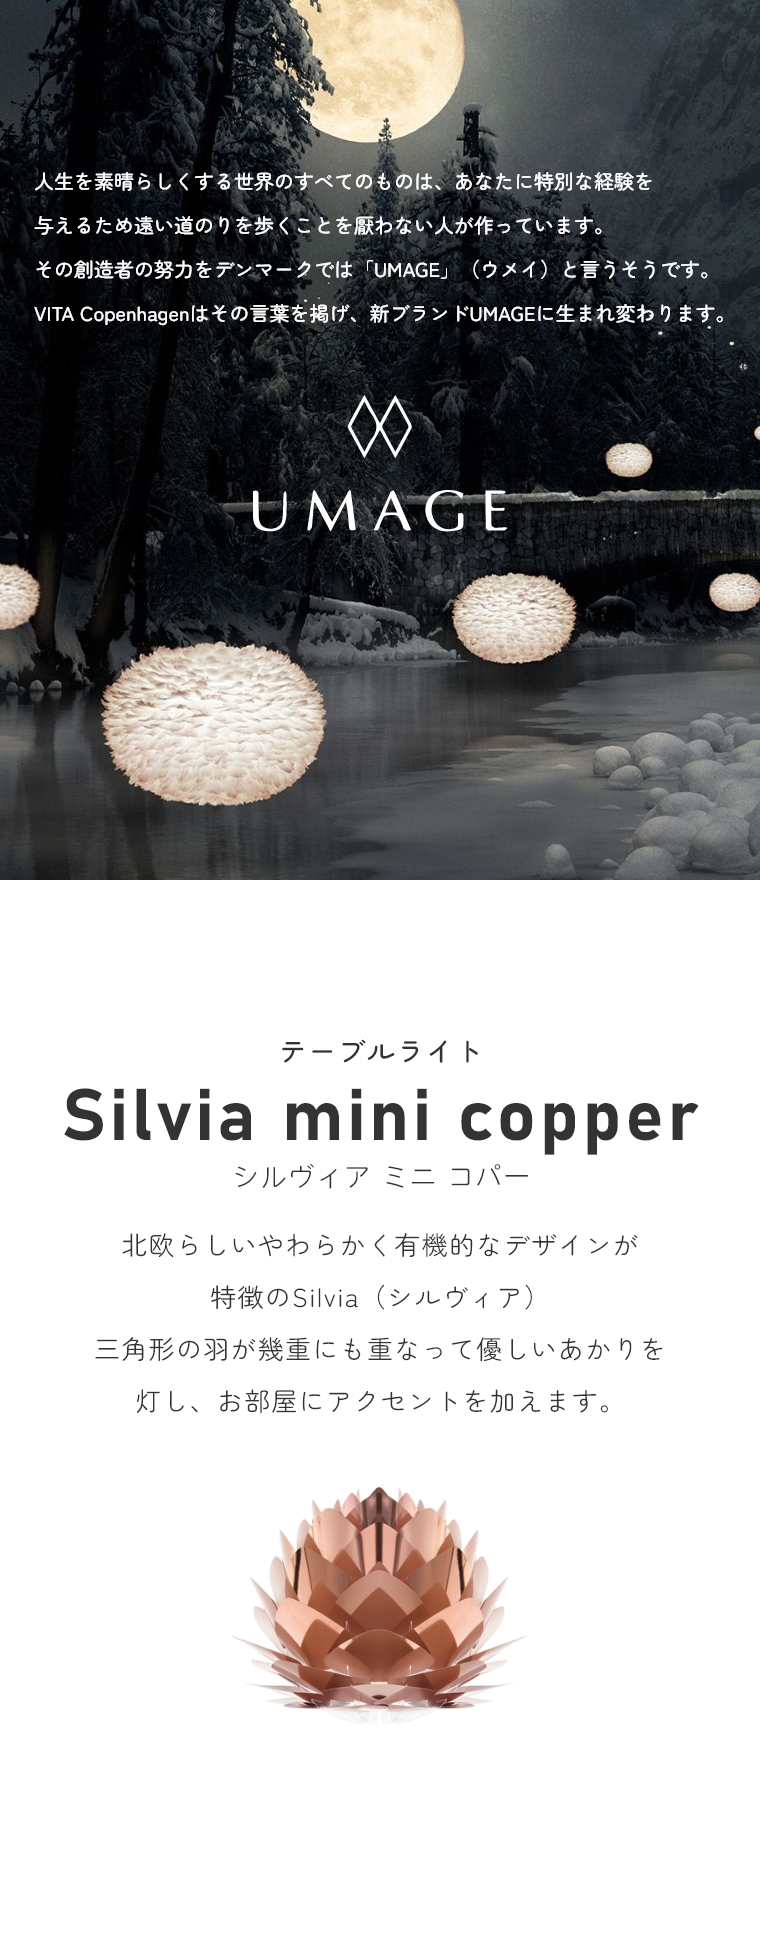 keCXg̃VvȃCg UMAGE(EC) Silvia mini copper (VBA ~j Rp[) e[uCg 2030 GbNX